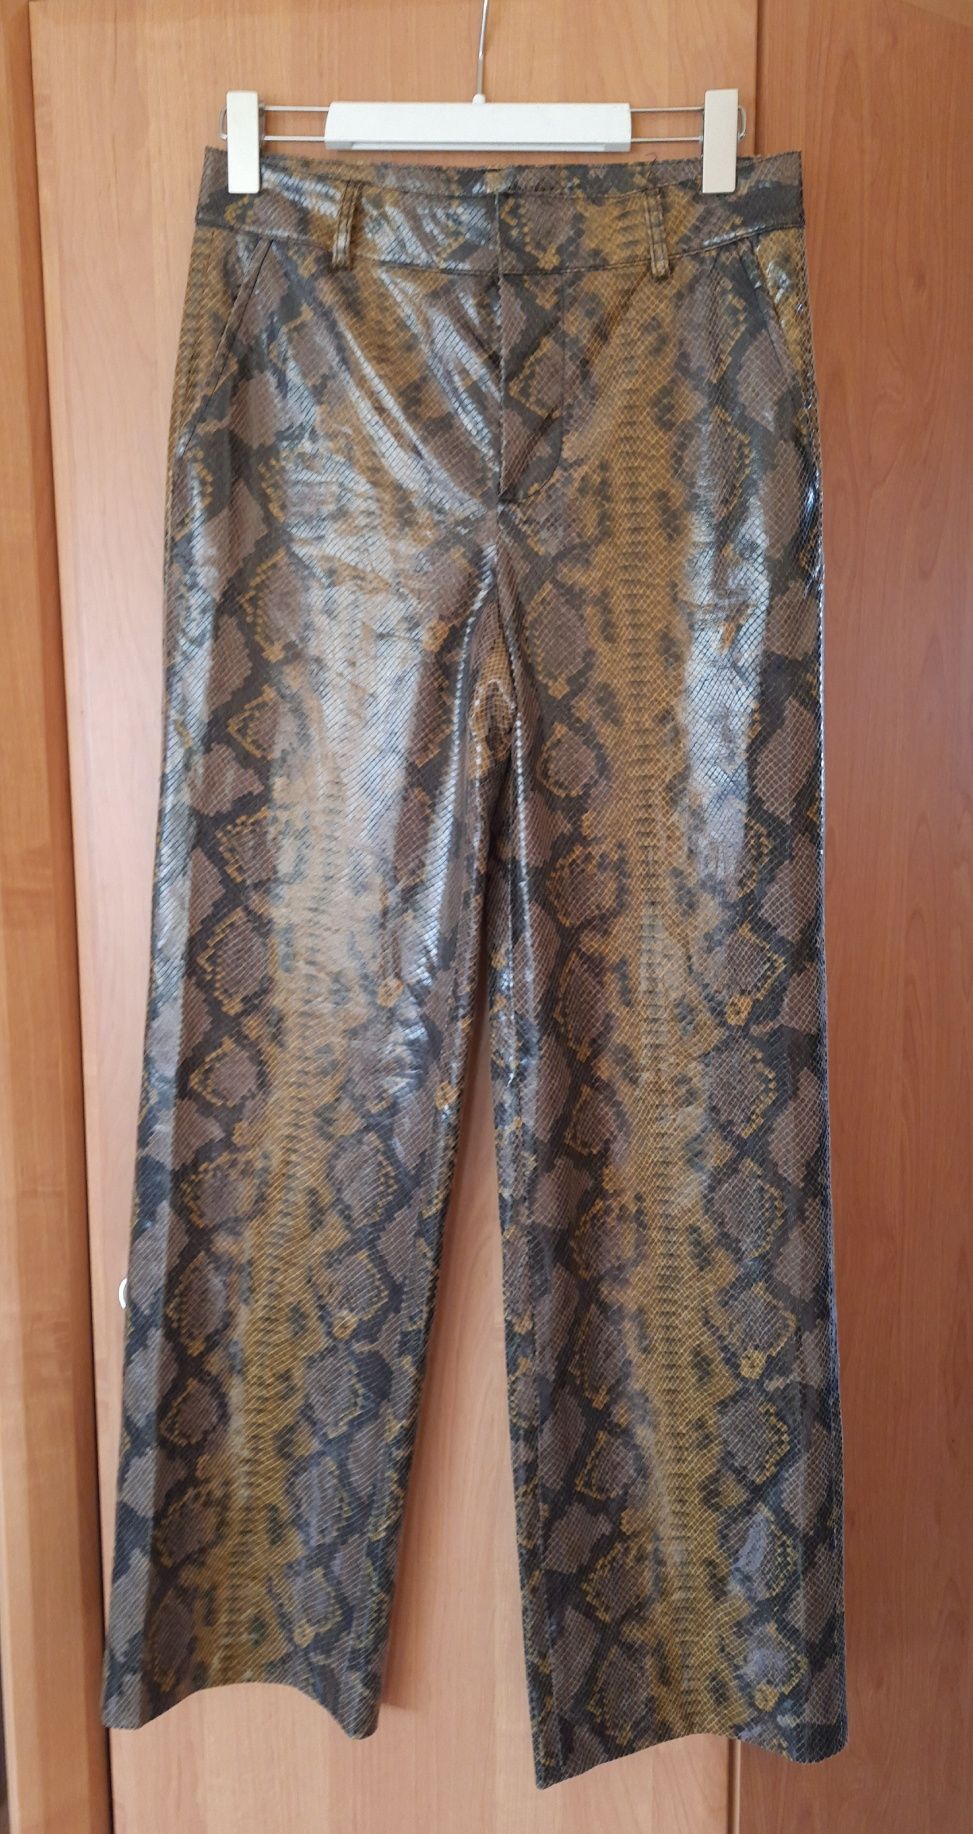 Spodnie skóropodobne z poliestyrelu w panterkę z szerokimi nogawkami